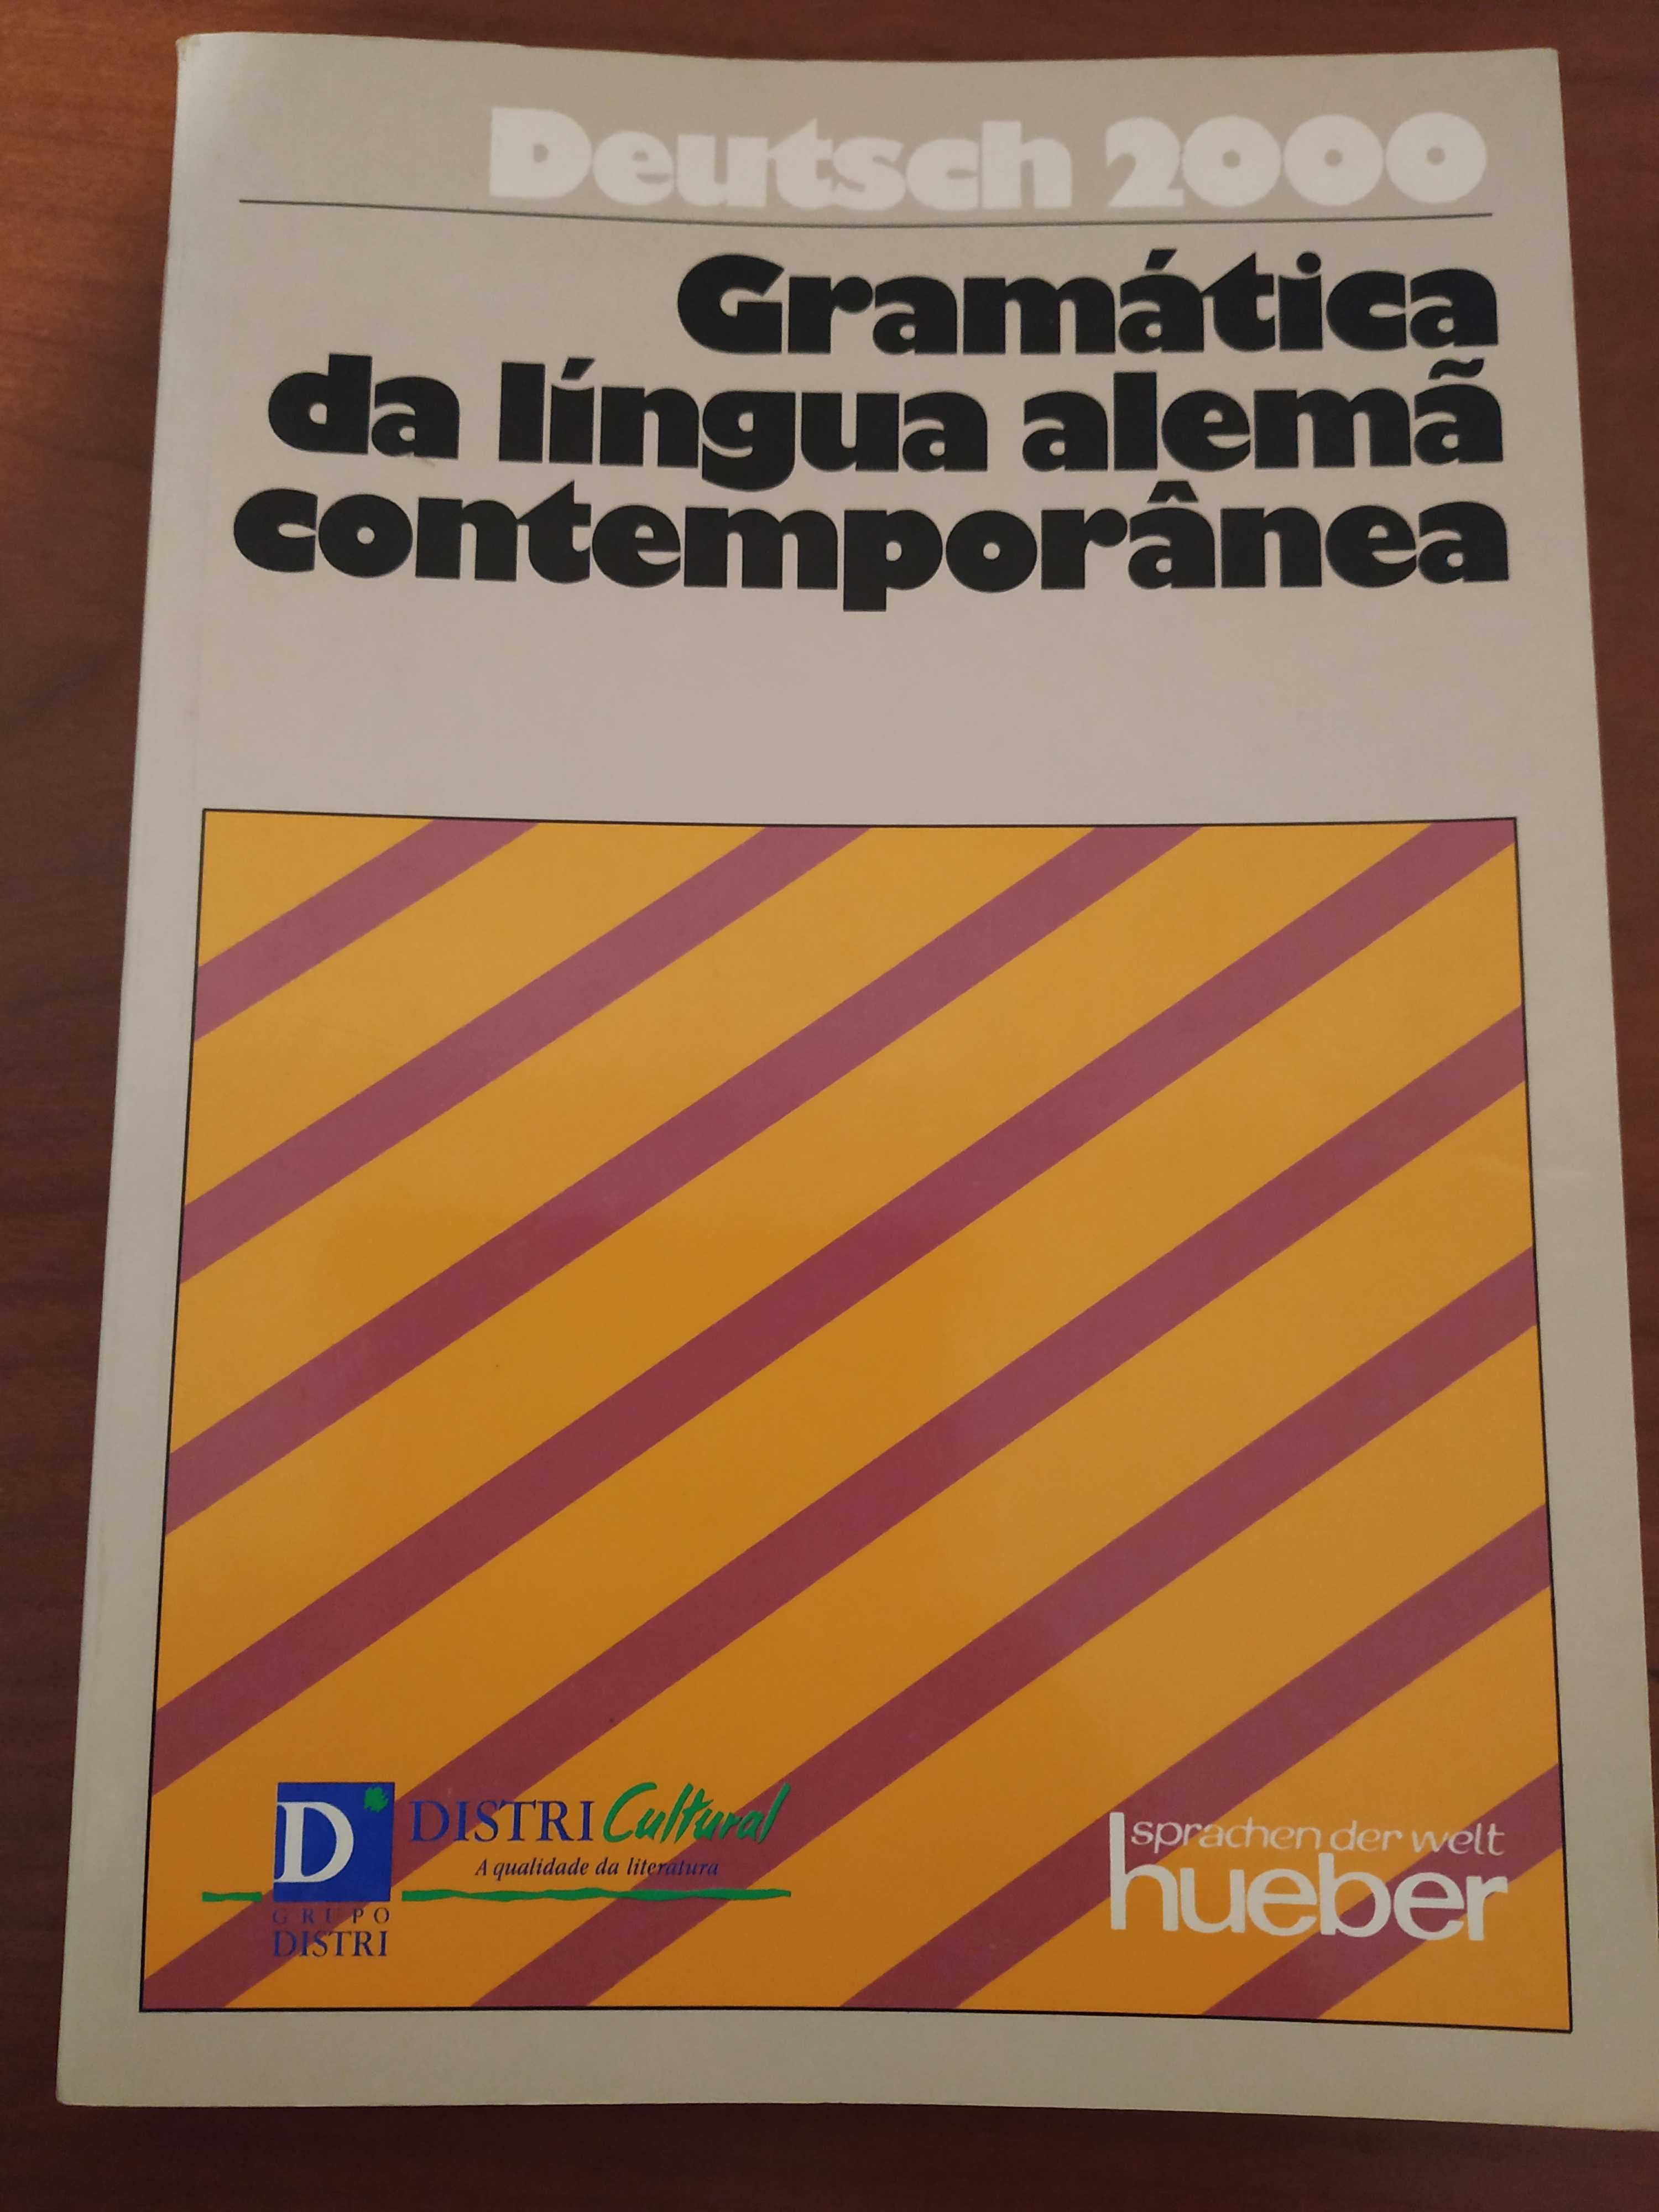 Livro "Gramática da língua alemã contemporânea"